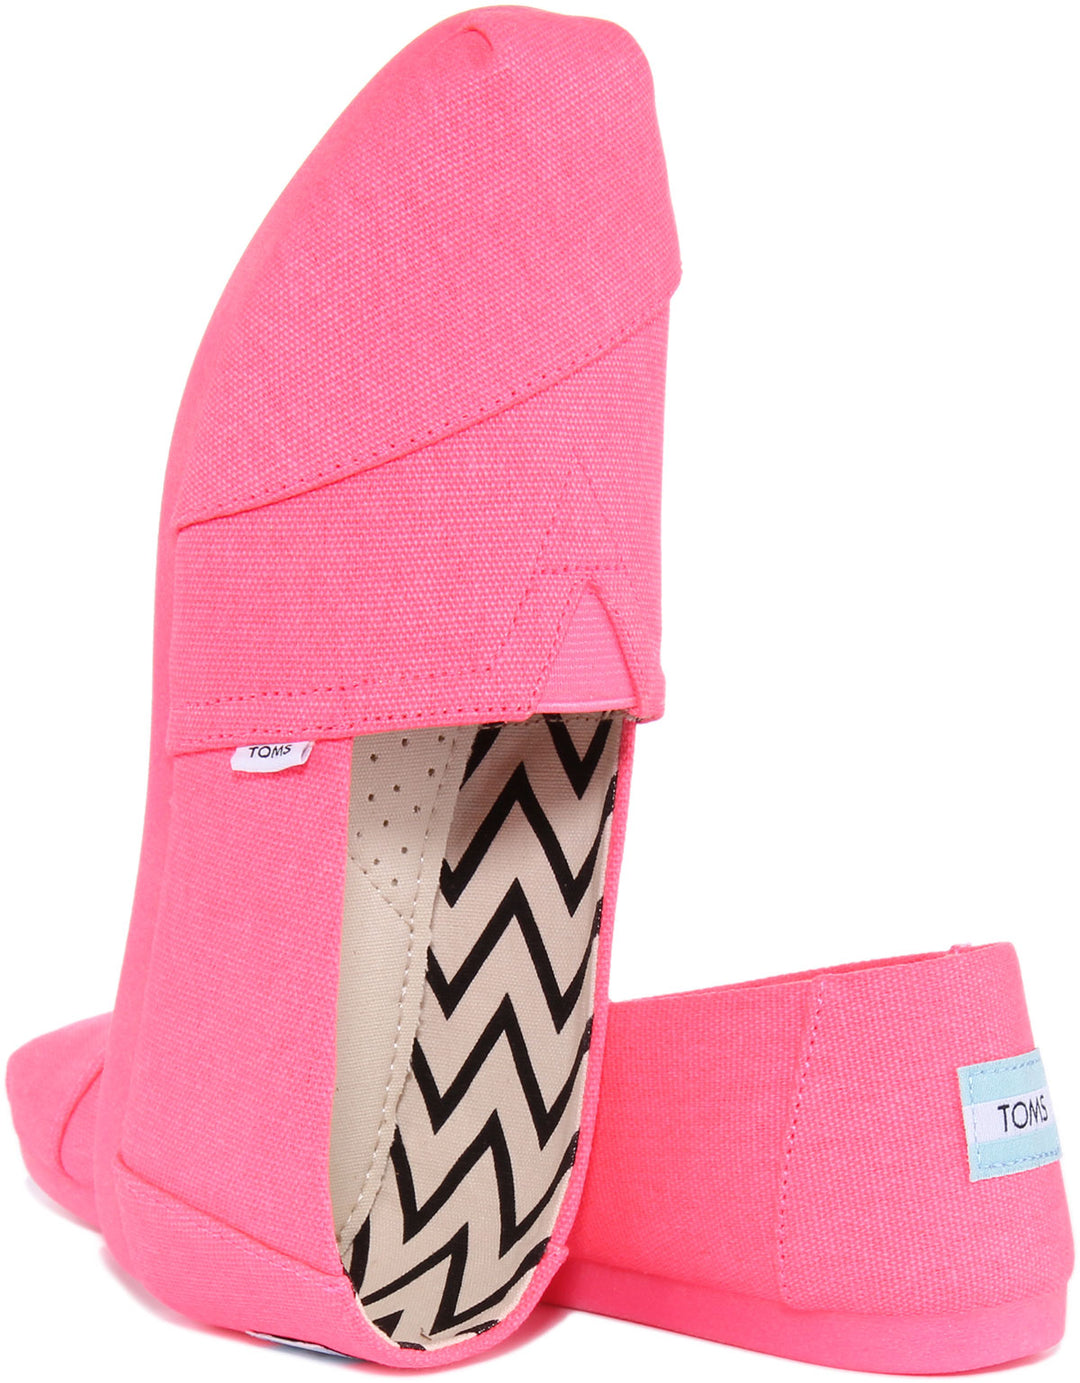 Toms Alpargata Zapatillas de lona de algodón reciclado para mujer en rosa neón